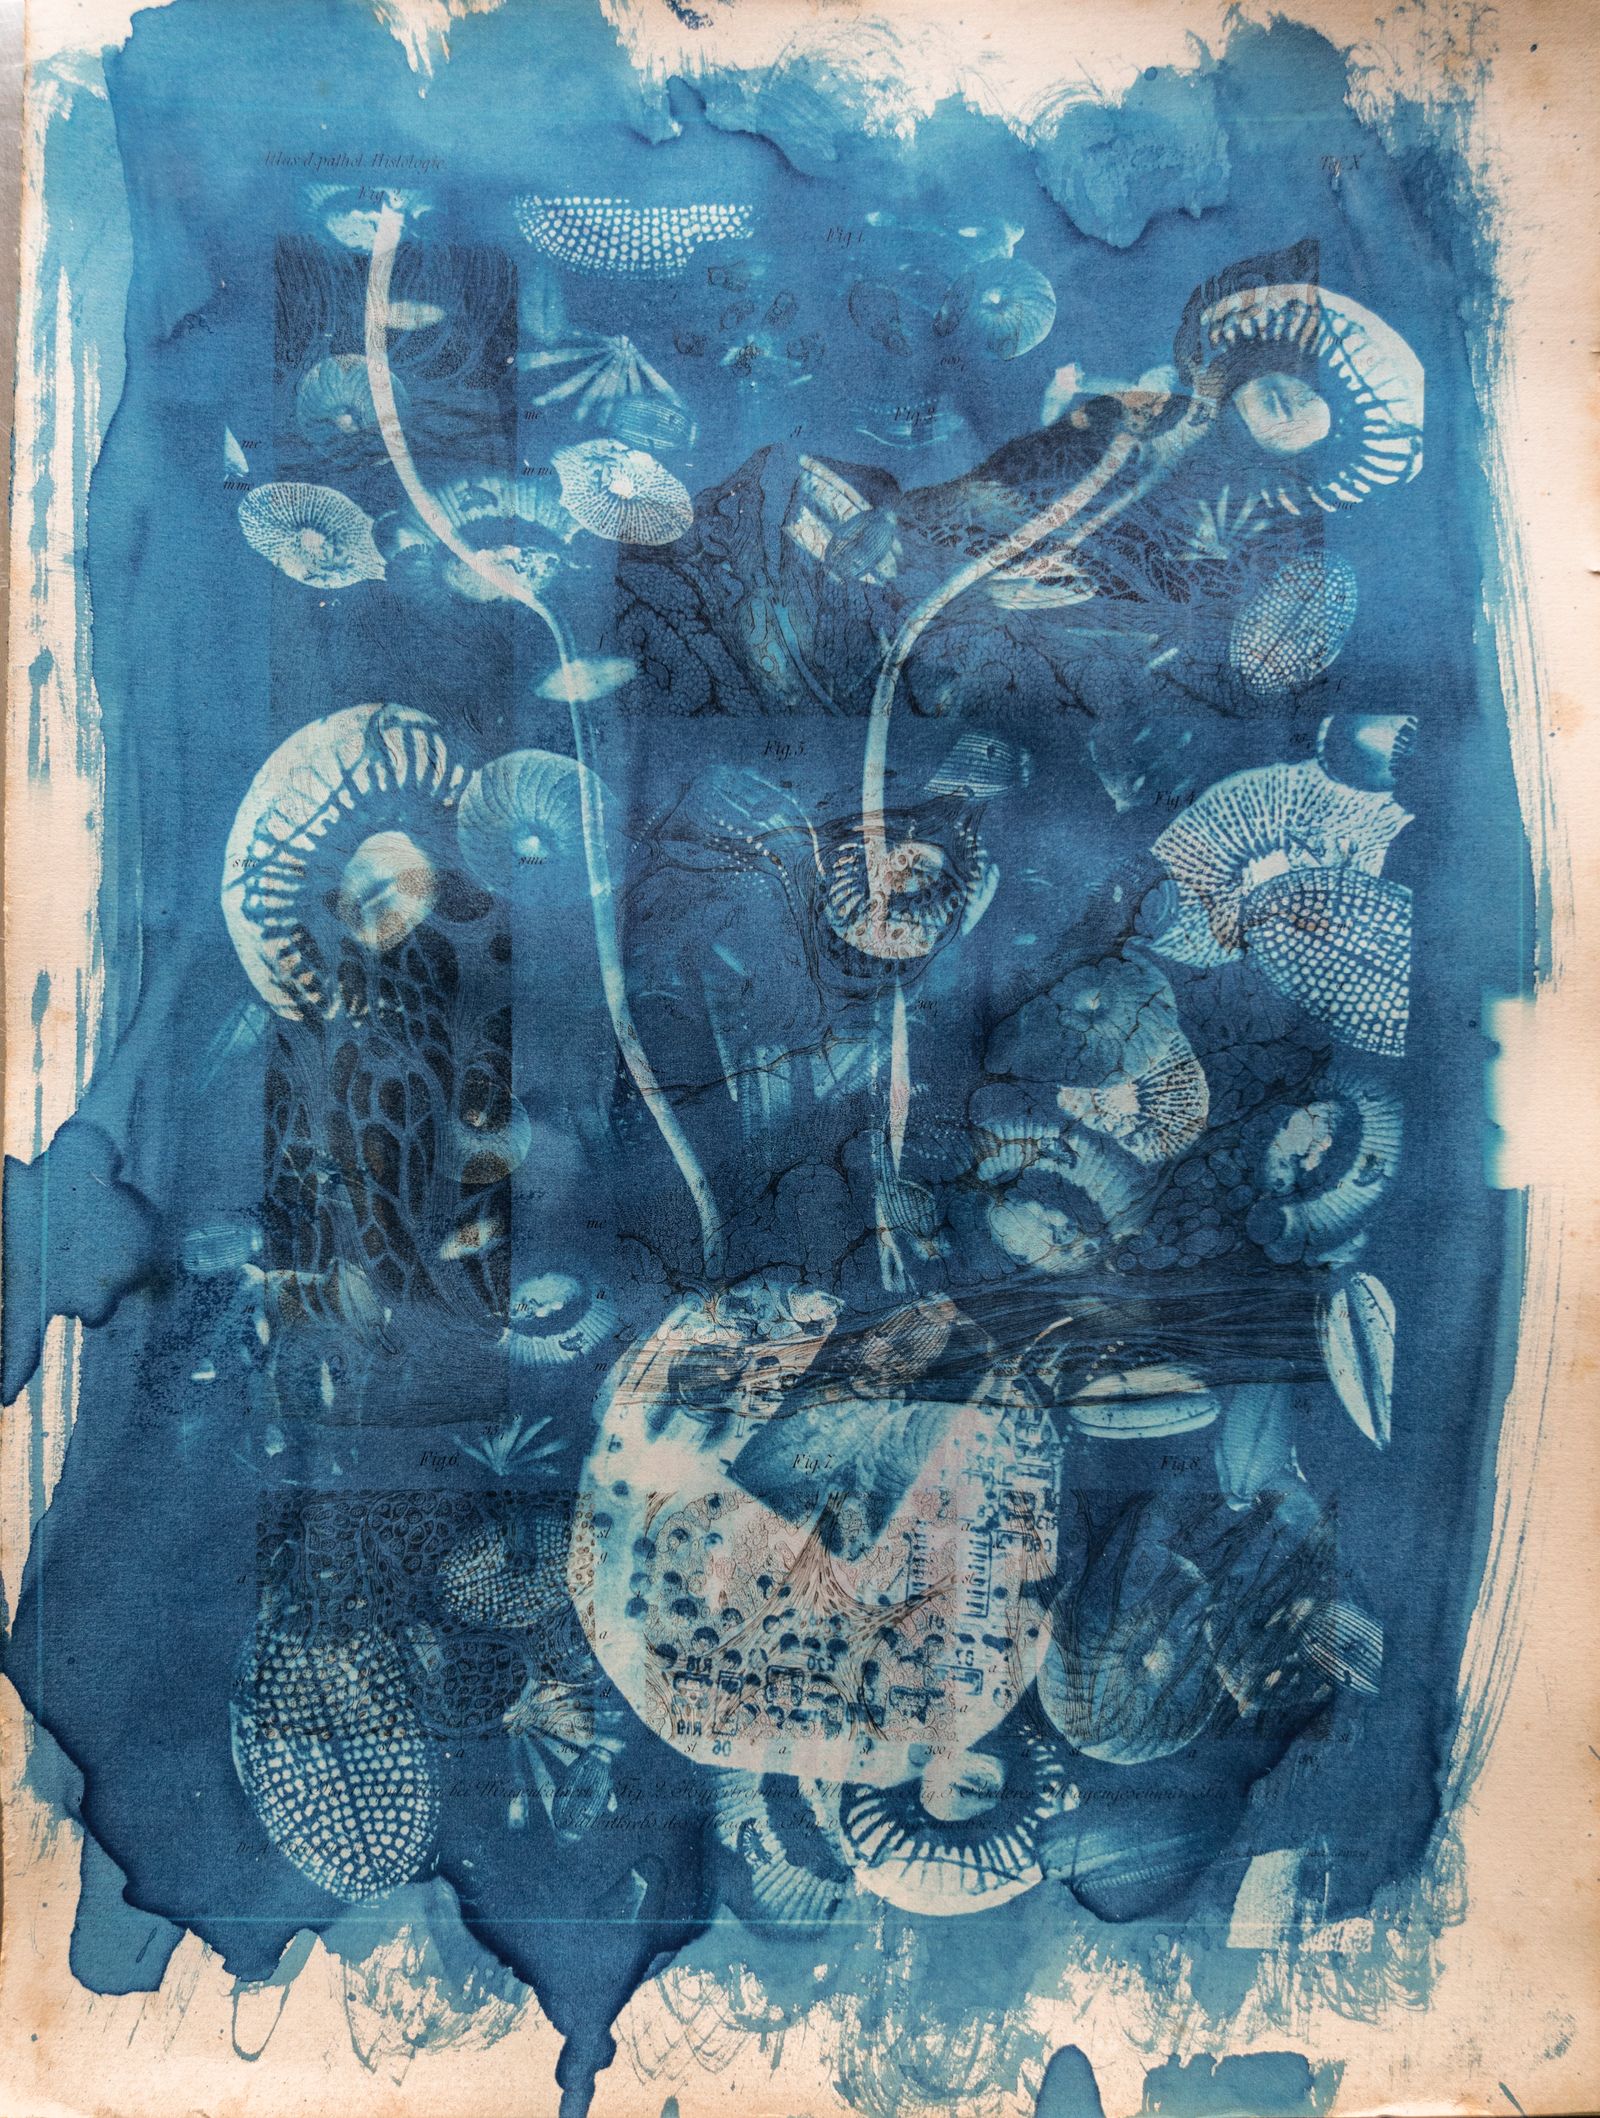 © Florence Iff - Amalgamated Fragmentation/ Technosphere 4 cyanotype on vintage lithography